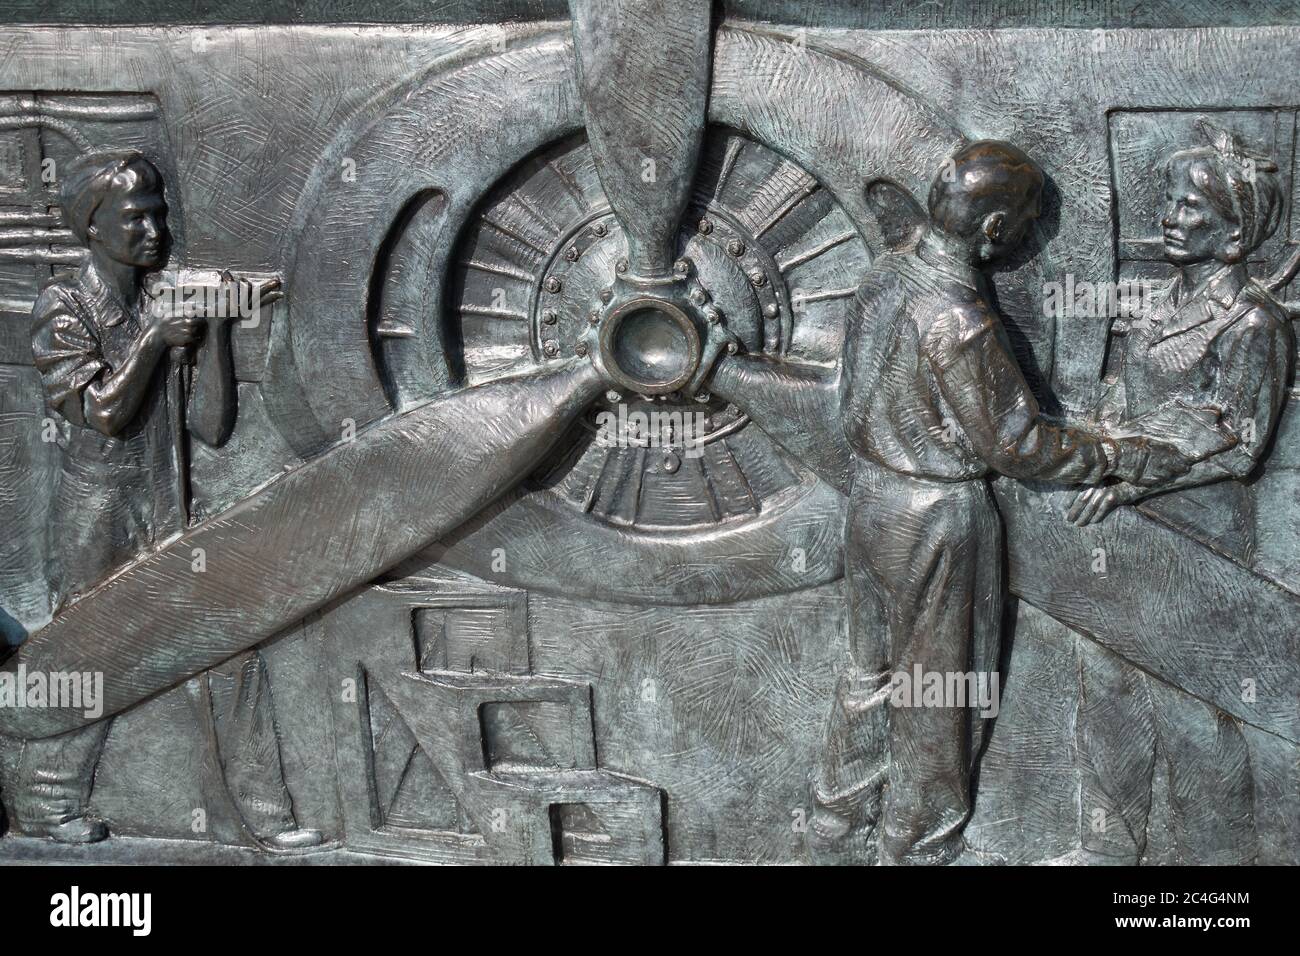 Donne che lavorano nella produzione di velivoli. Bassorilievo in bronzo situato nel Monumento commemorativo della seconda Guerra Mondiale, Washington, DC, USA. Foto Stock